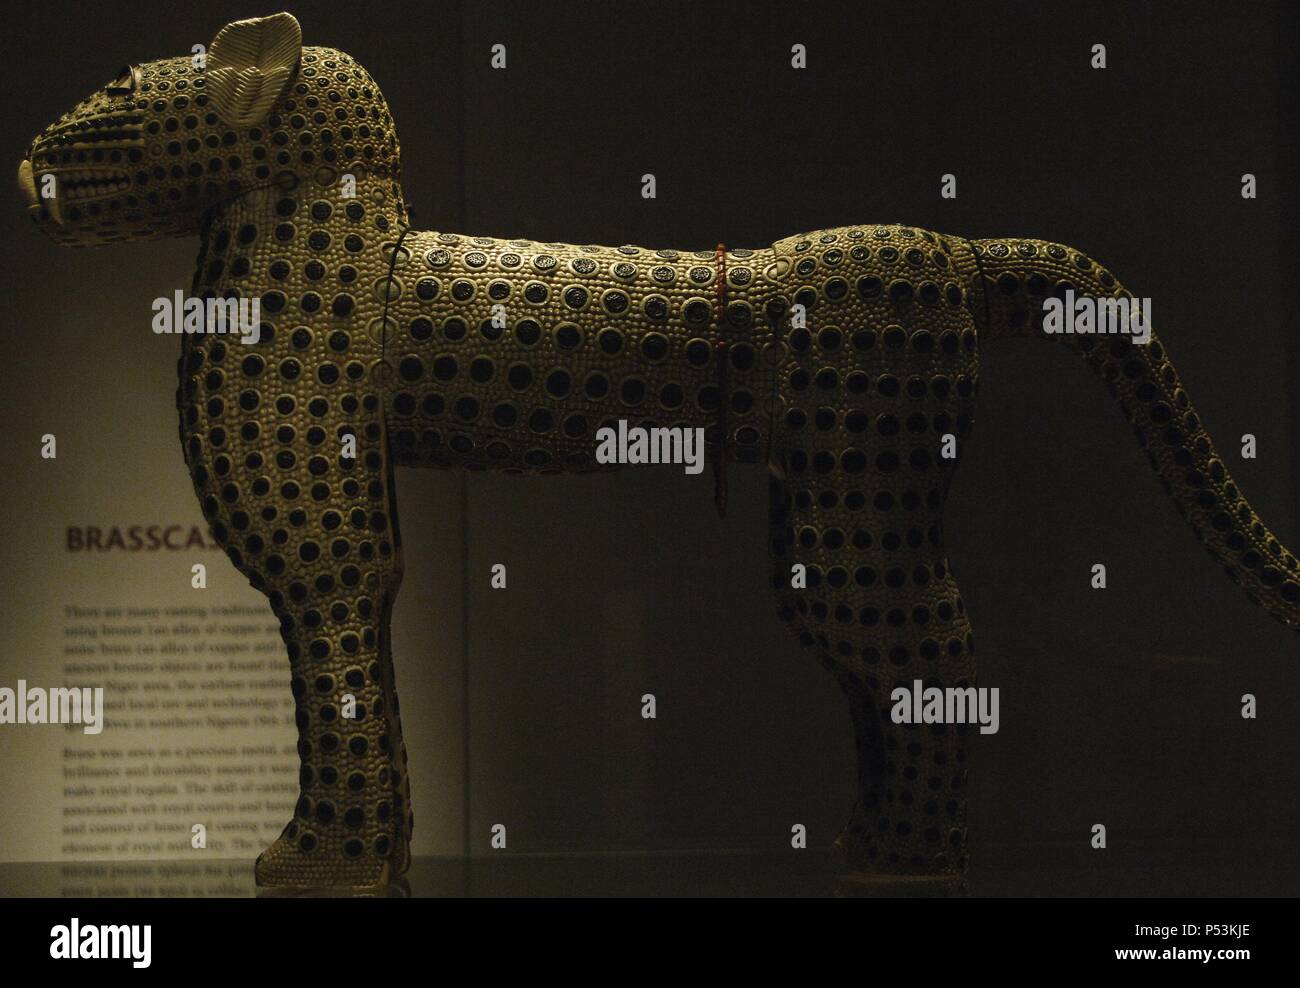 ARTE AFRICANO. NIGERIA. S. XIX. LEOPARDO de marfil, cobre y coral. Reino de Benín. Museo Británico. Londres. Inglaterra. Reino Unido. Stock Photo